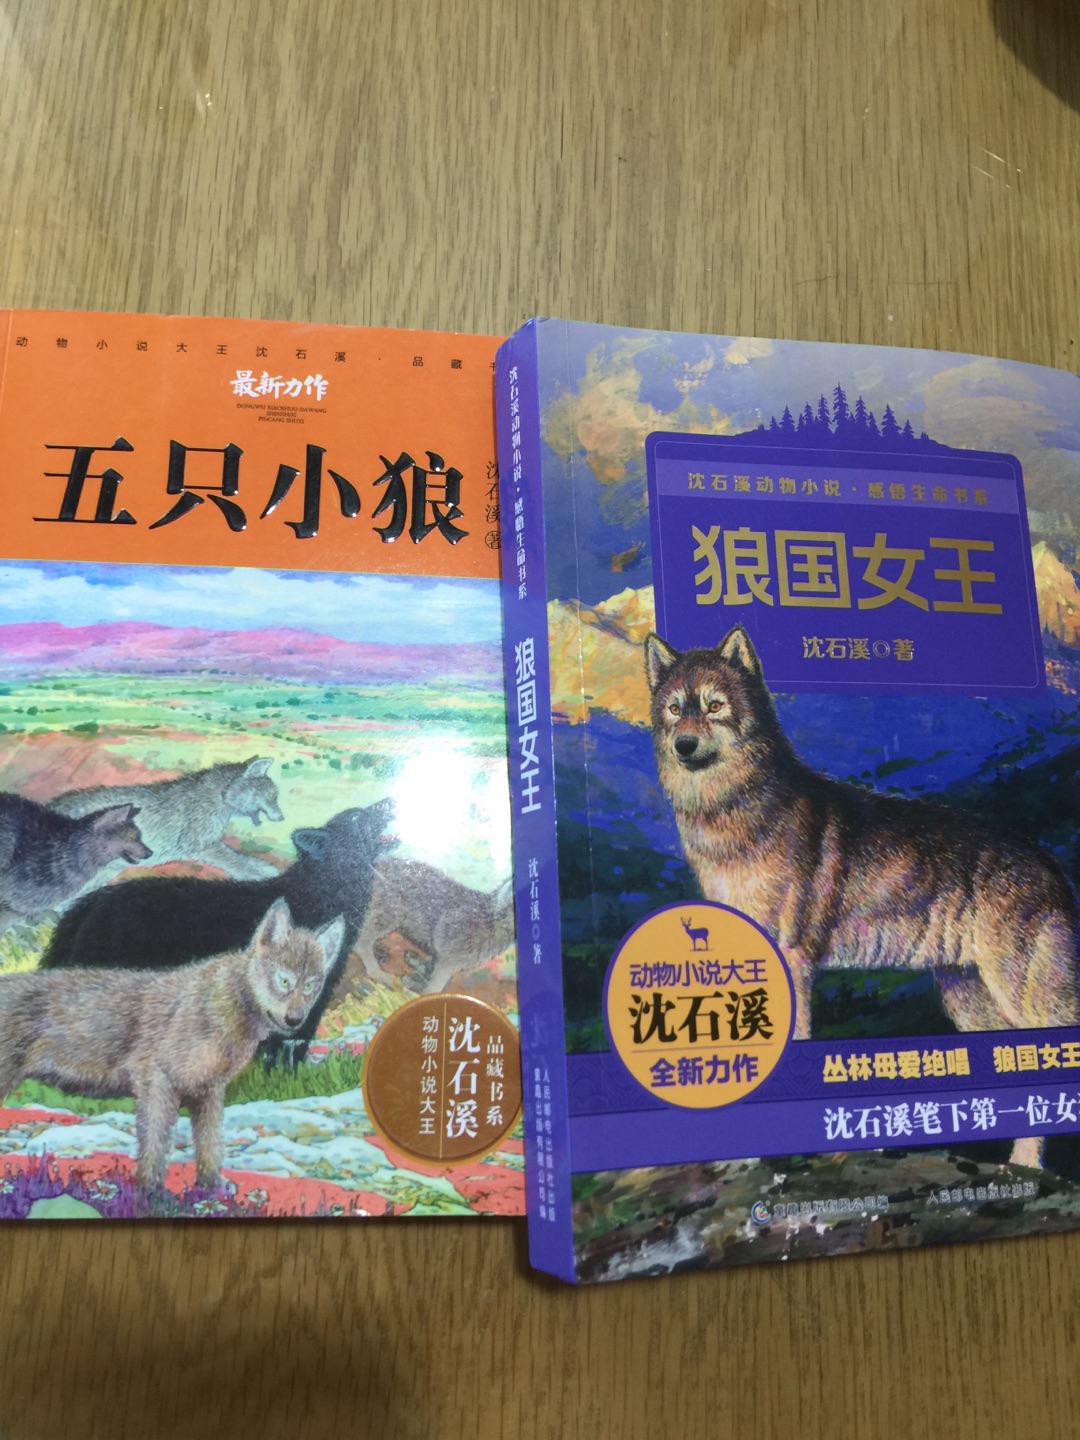 沈石溪的动物小说都在逐步购买中，喜欢阅读的书籍。